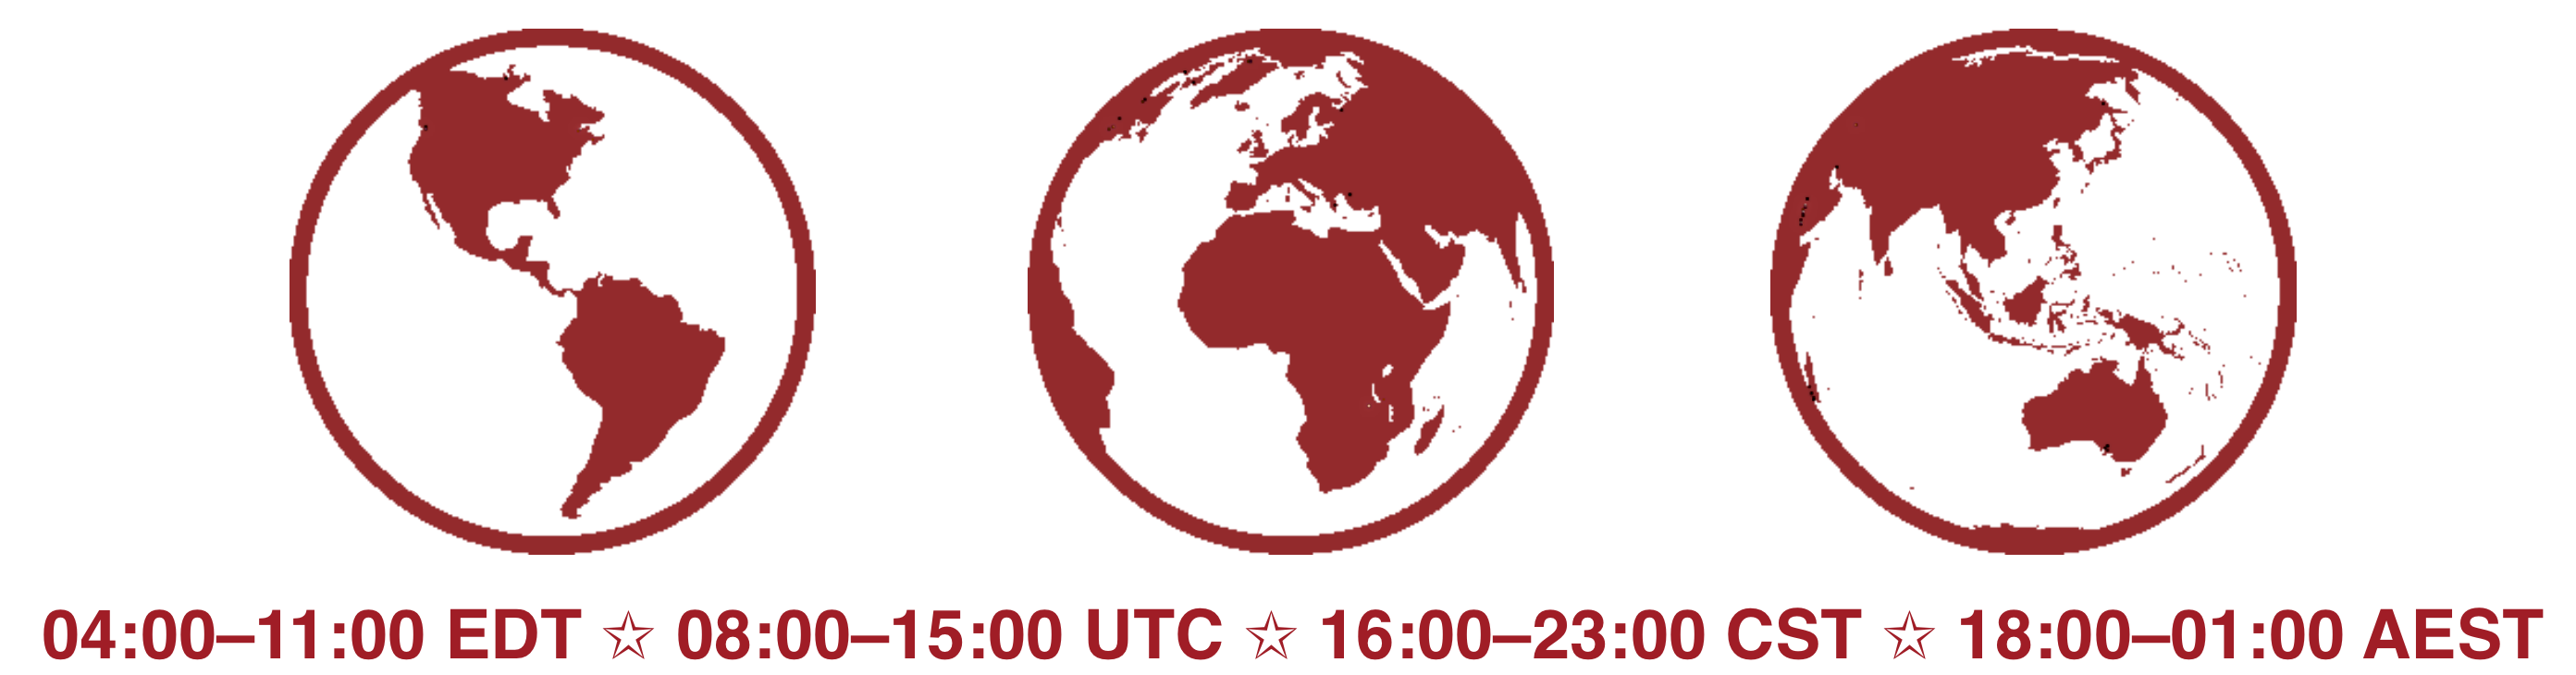 Other time zones: 04:00-11:00 EDT, 08:00-15:00 UTC, 16:00-23:00 CST, 18:00-01:00 AEST